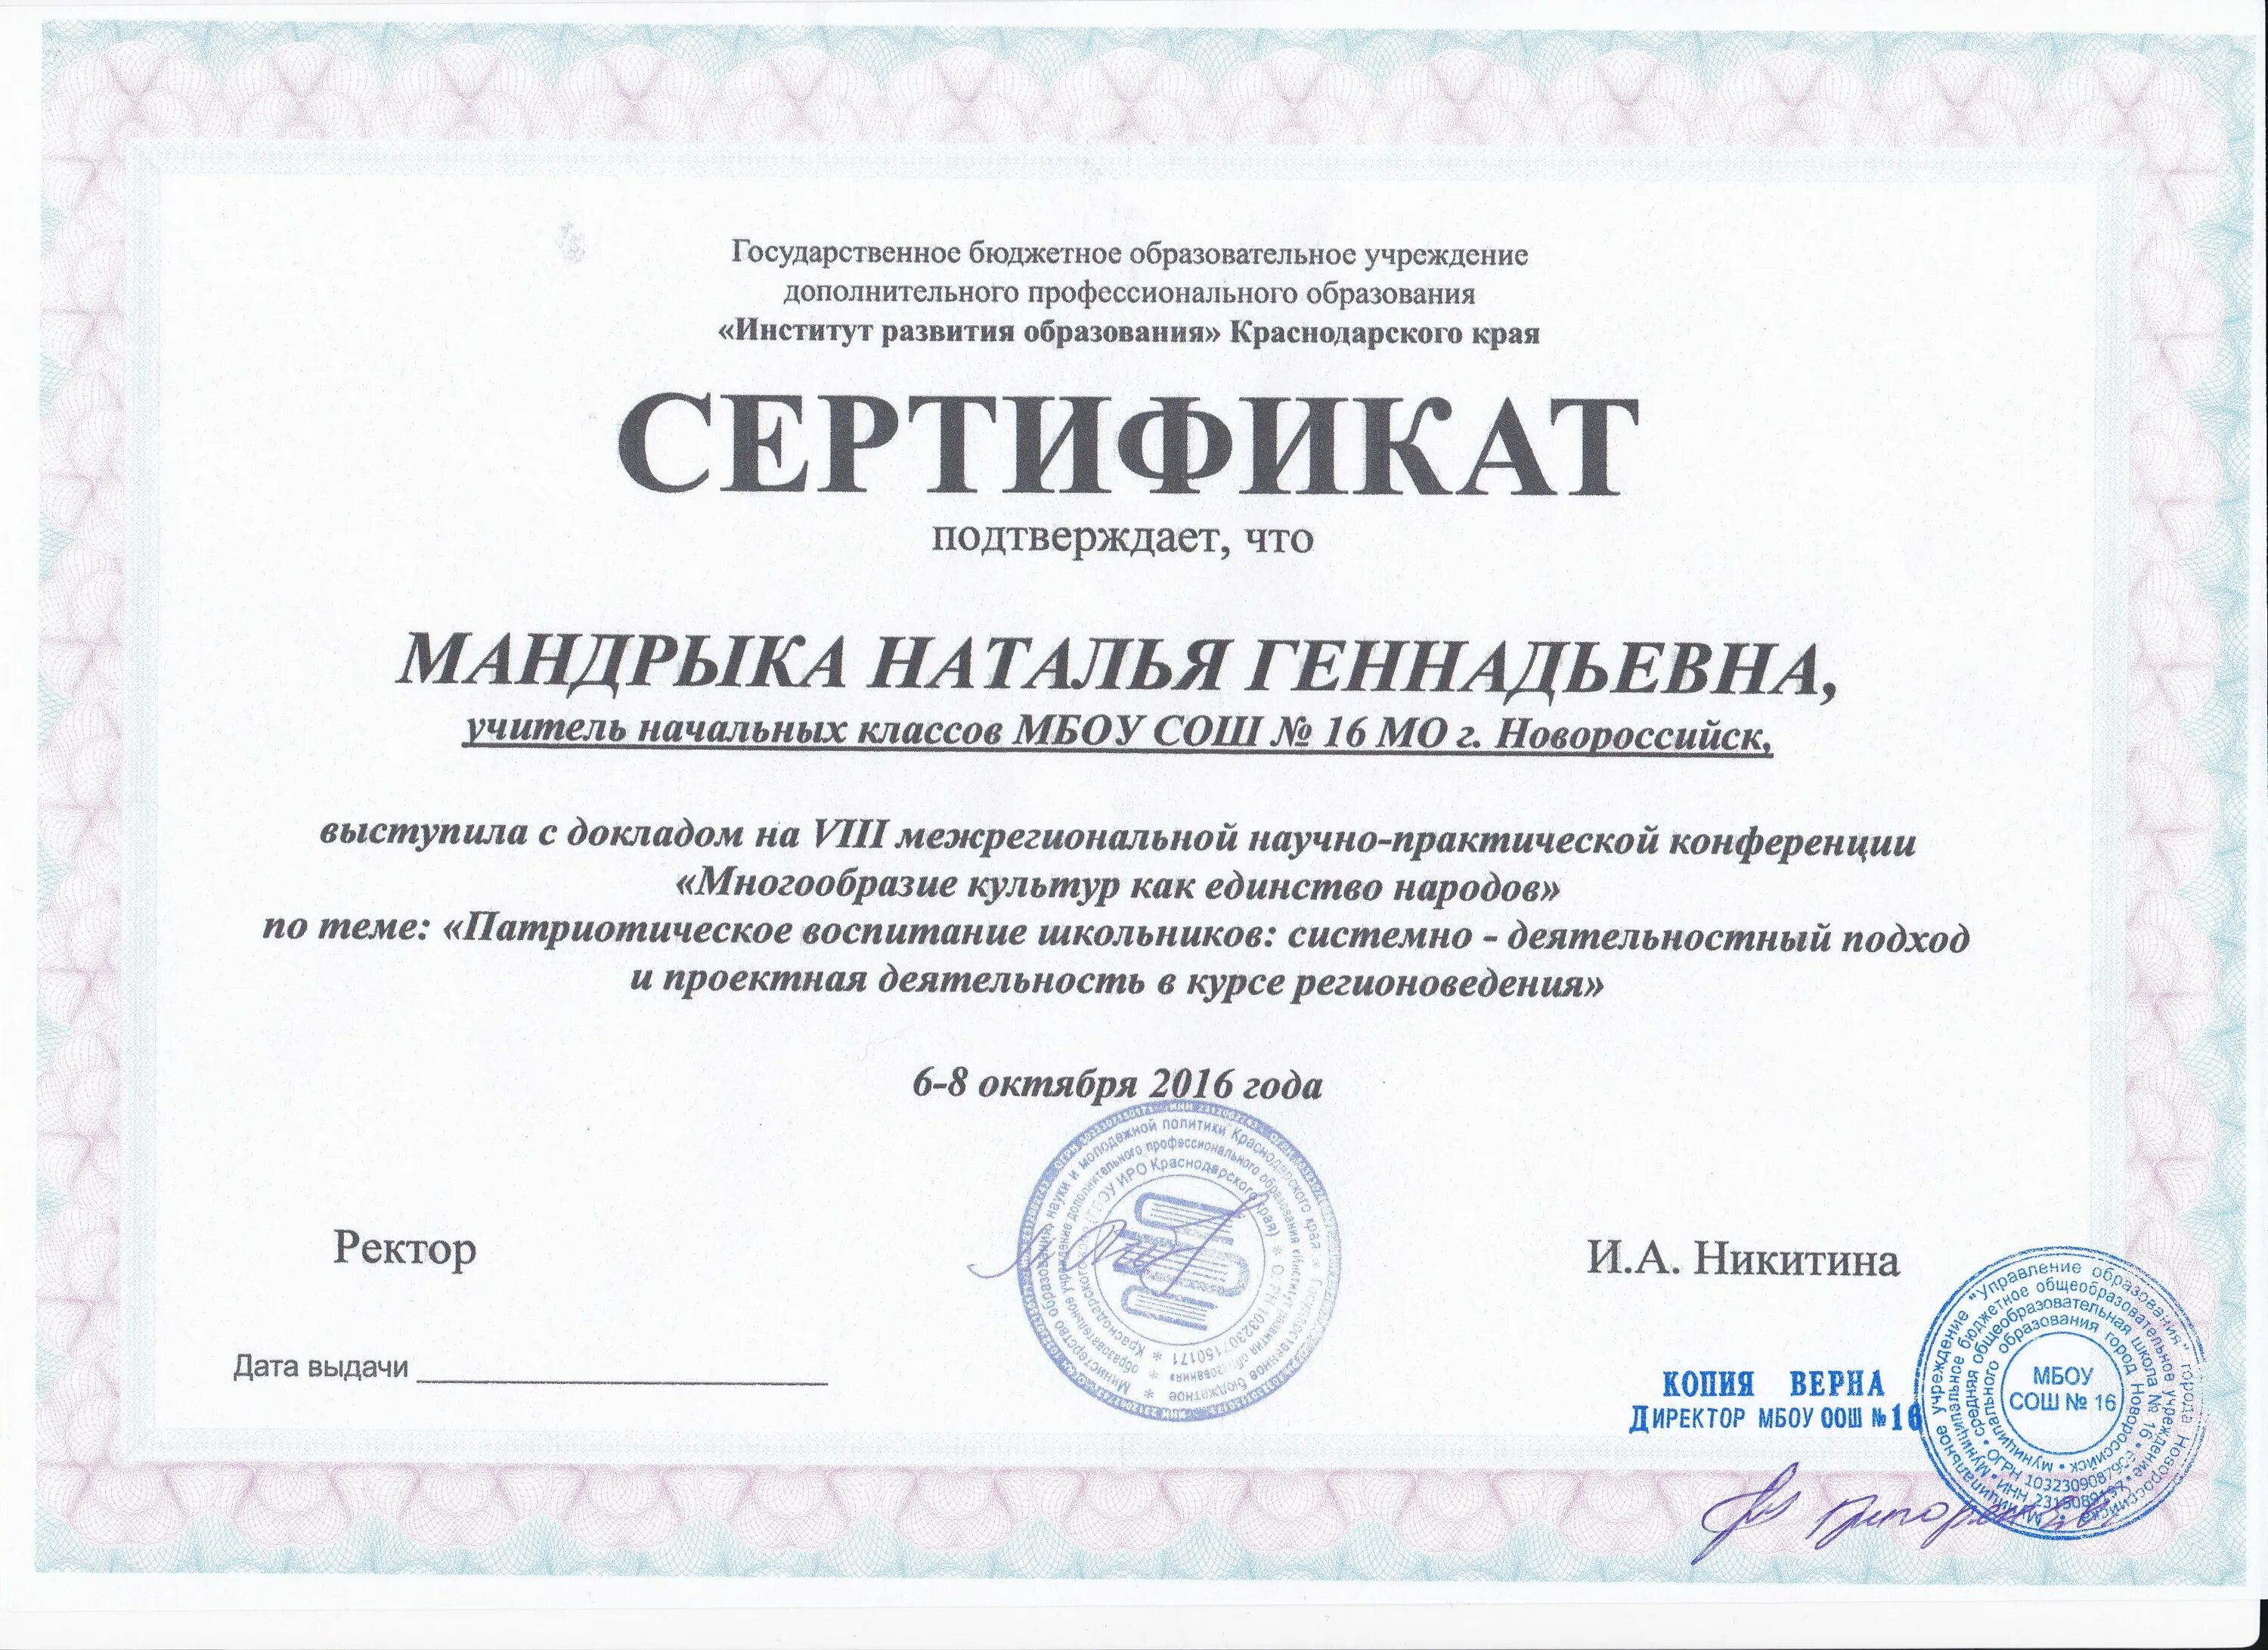 Сайт хк иро хабаровск. Институт развития образования Краснодарского края. Сертификат об опыте работы. Сертификаты обмен опытом.